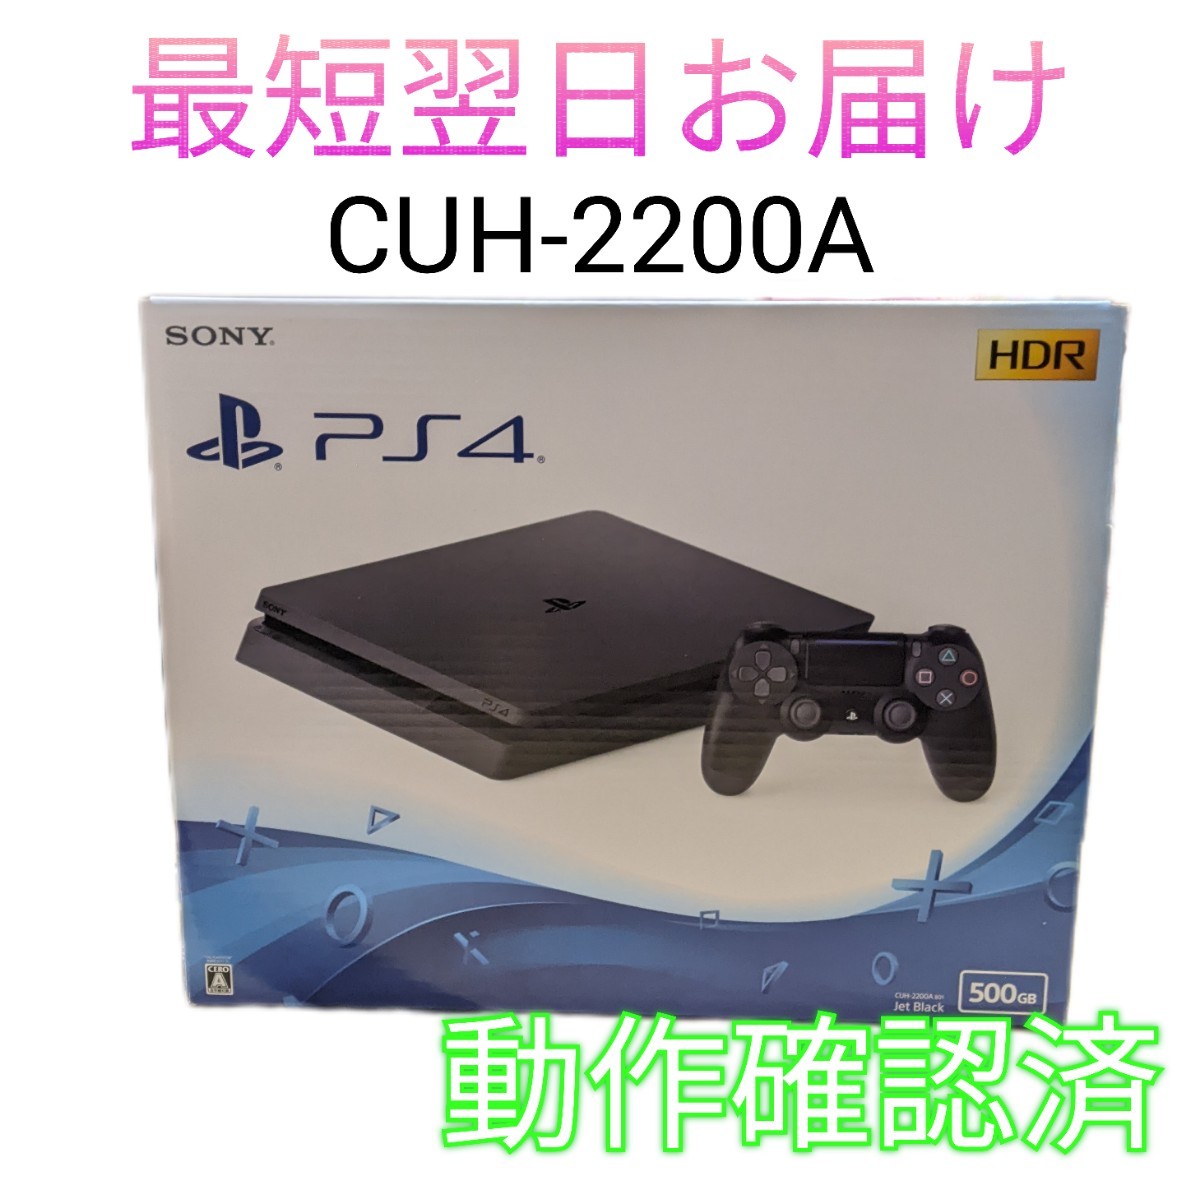 SONY PS4 本体 CUH-2200A 500GB ジェット・ブラック コントローラー